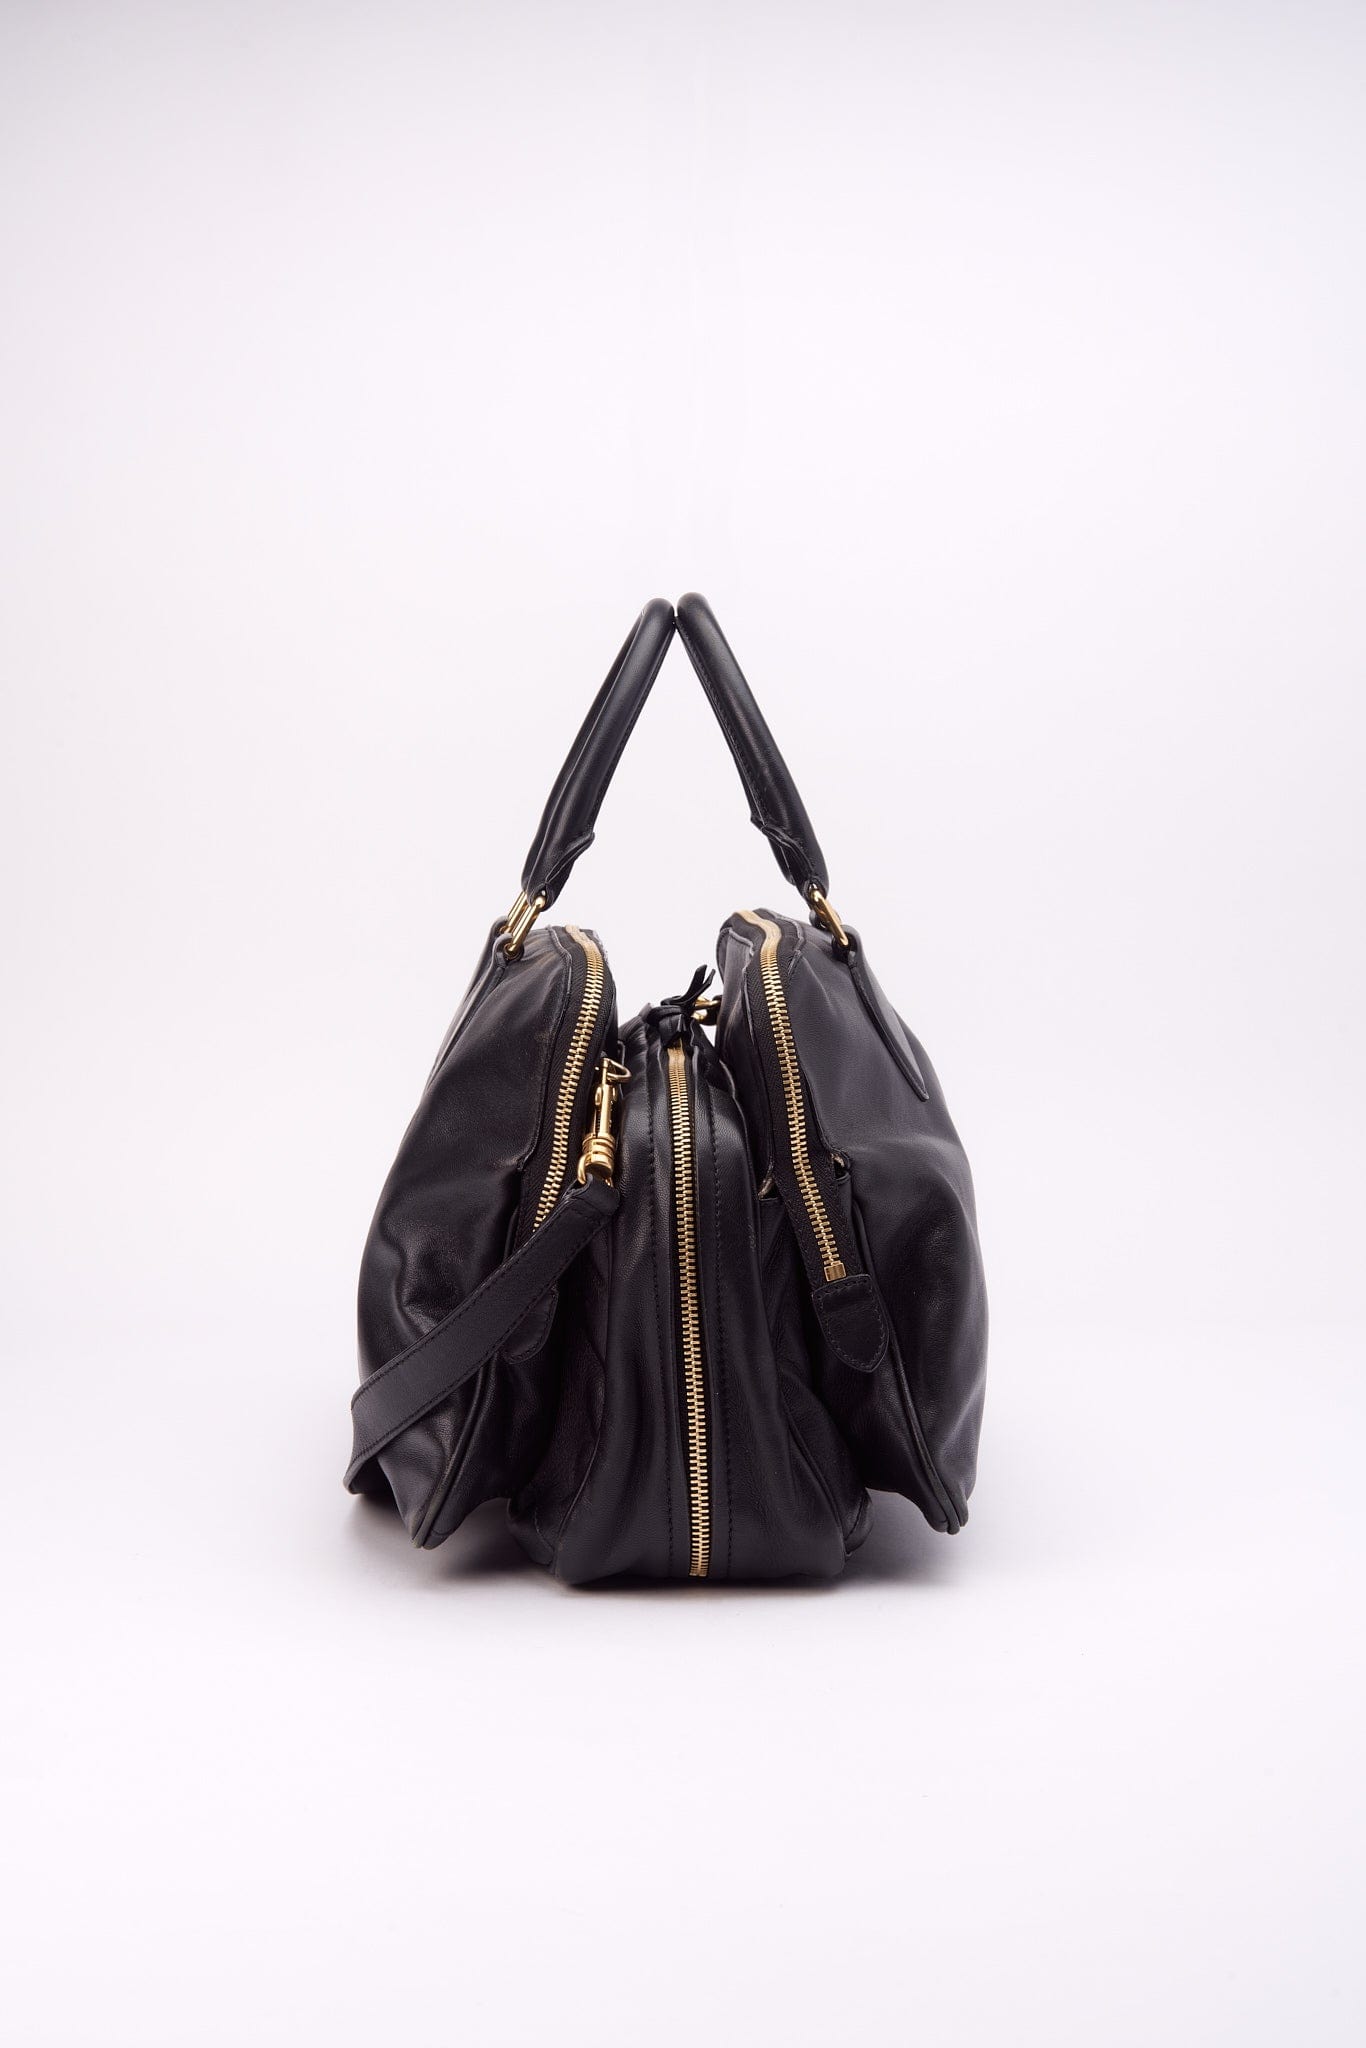 Céline Phoebe Philo Triptyque Black Leather Bag